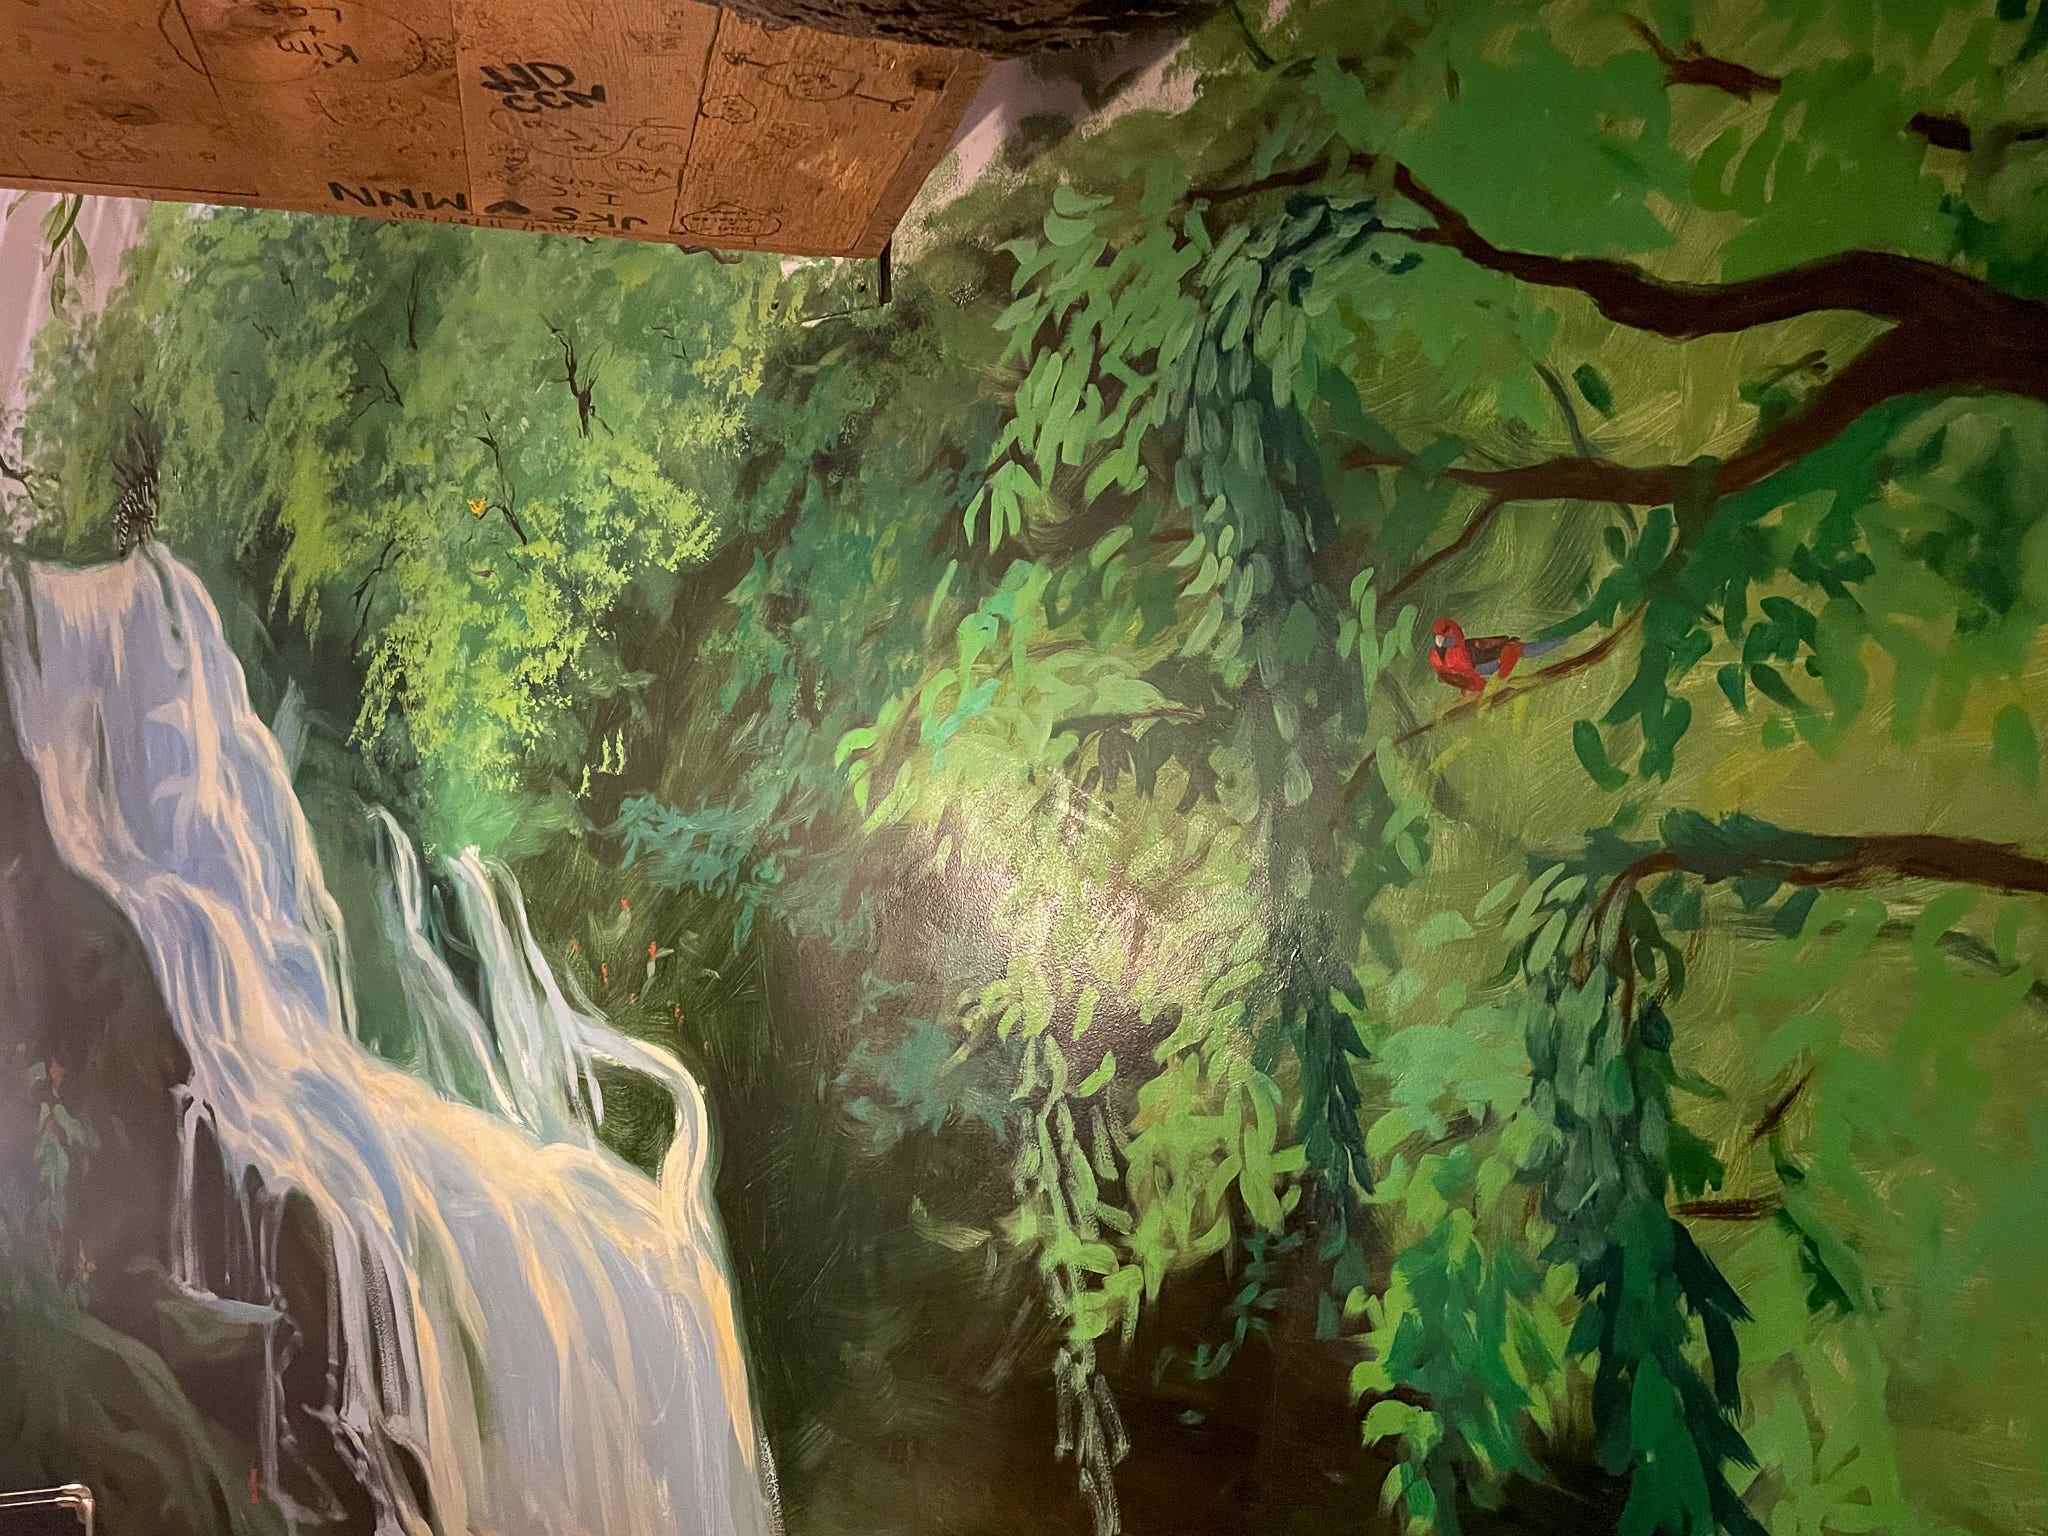 Das Regenwald-Wandbild im Themen-Hotelzimmer.